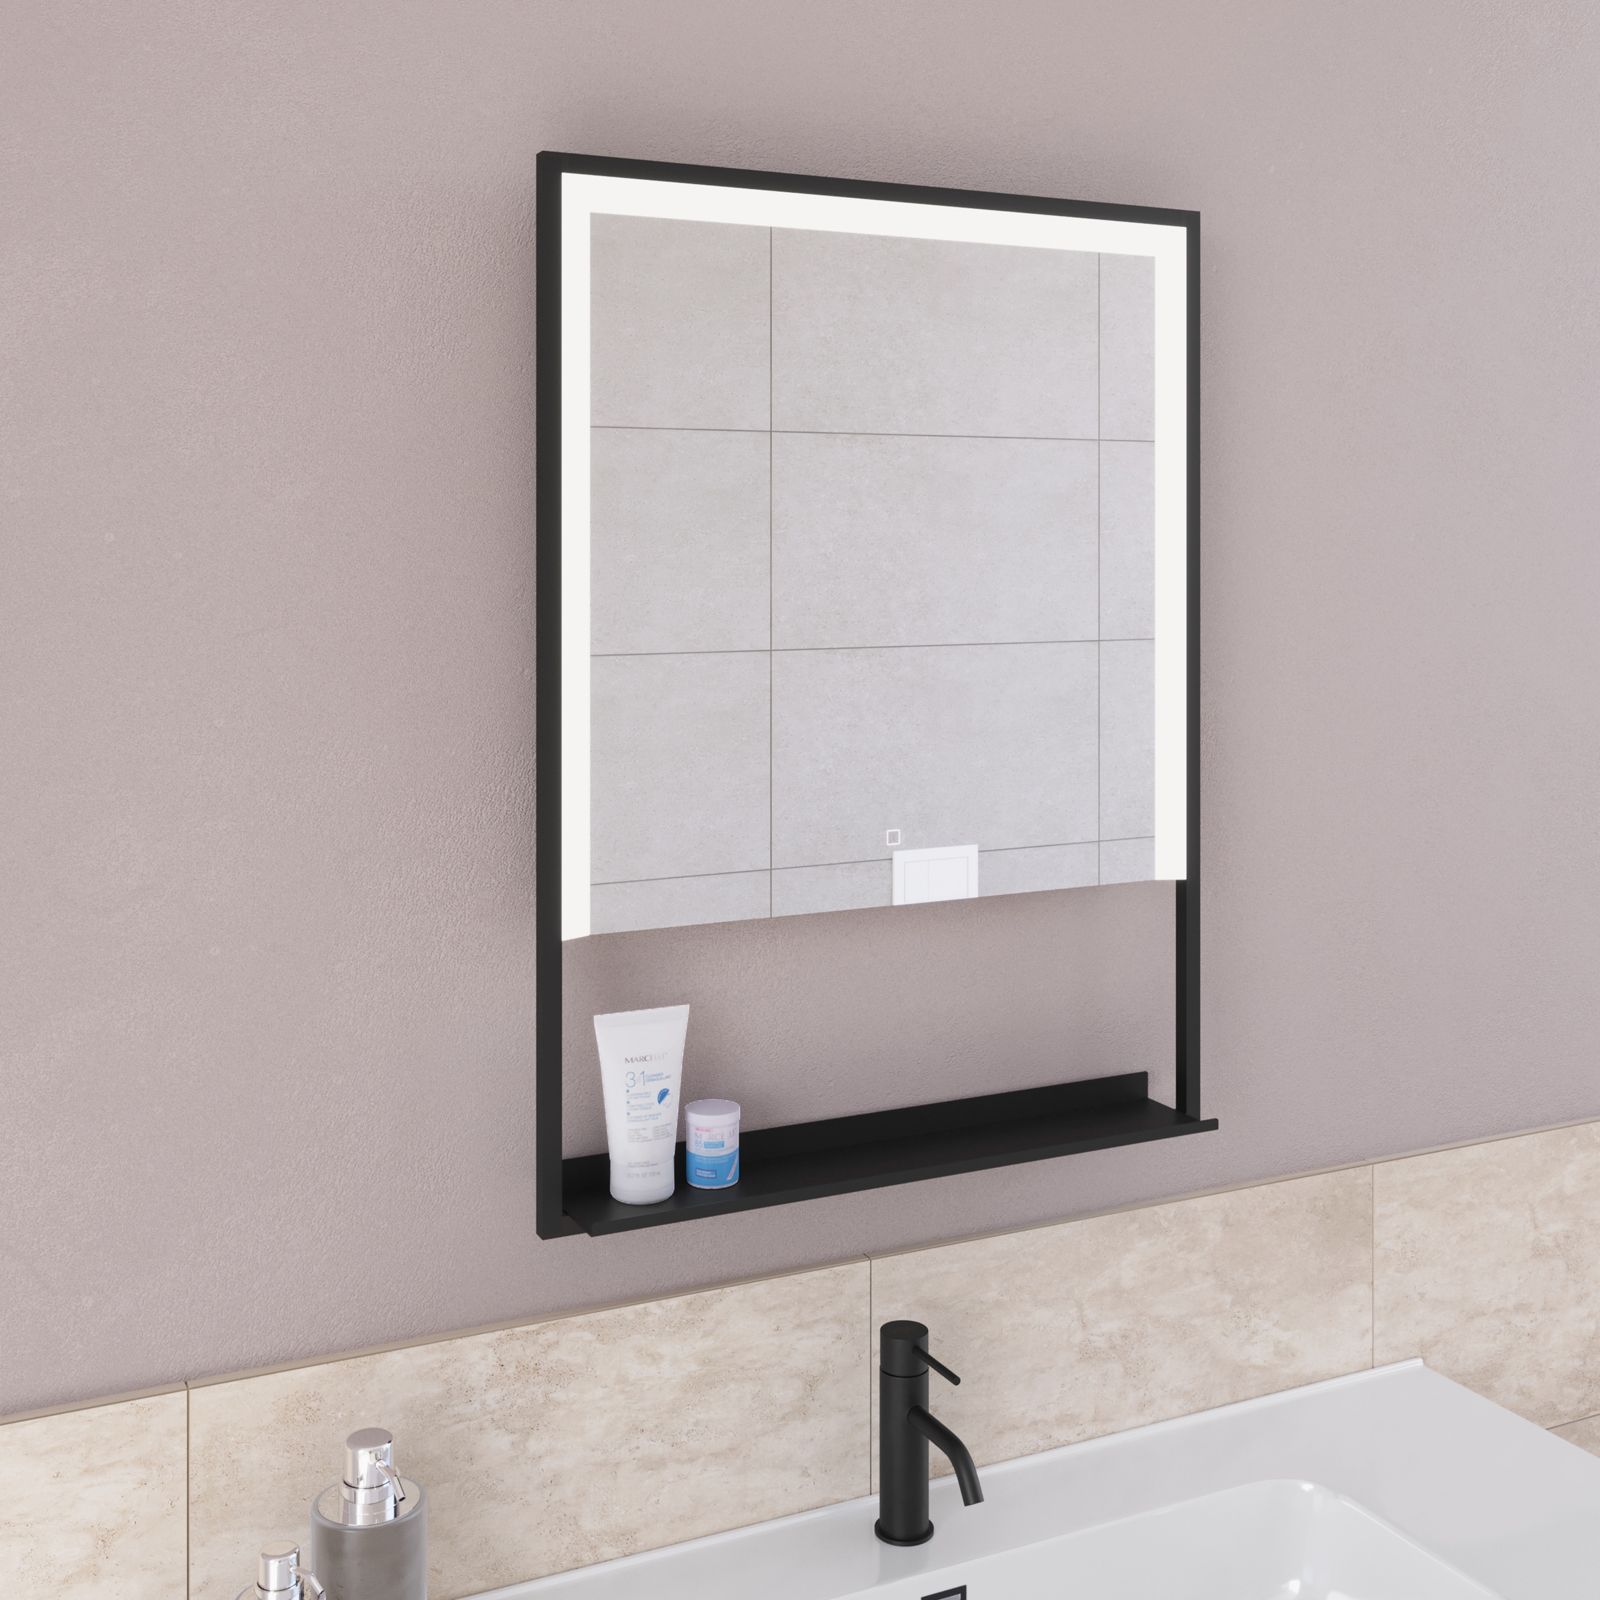 ADDHome ® Specchio cornice metallica LED, specchio bagno LED, specchio  parete LED, specchio metallo, specchio nero, specchio rettangolare con  angoli arrotondati -  Italia